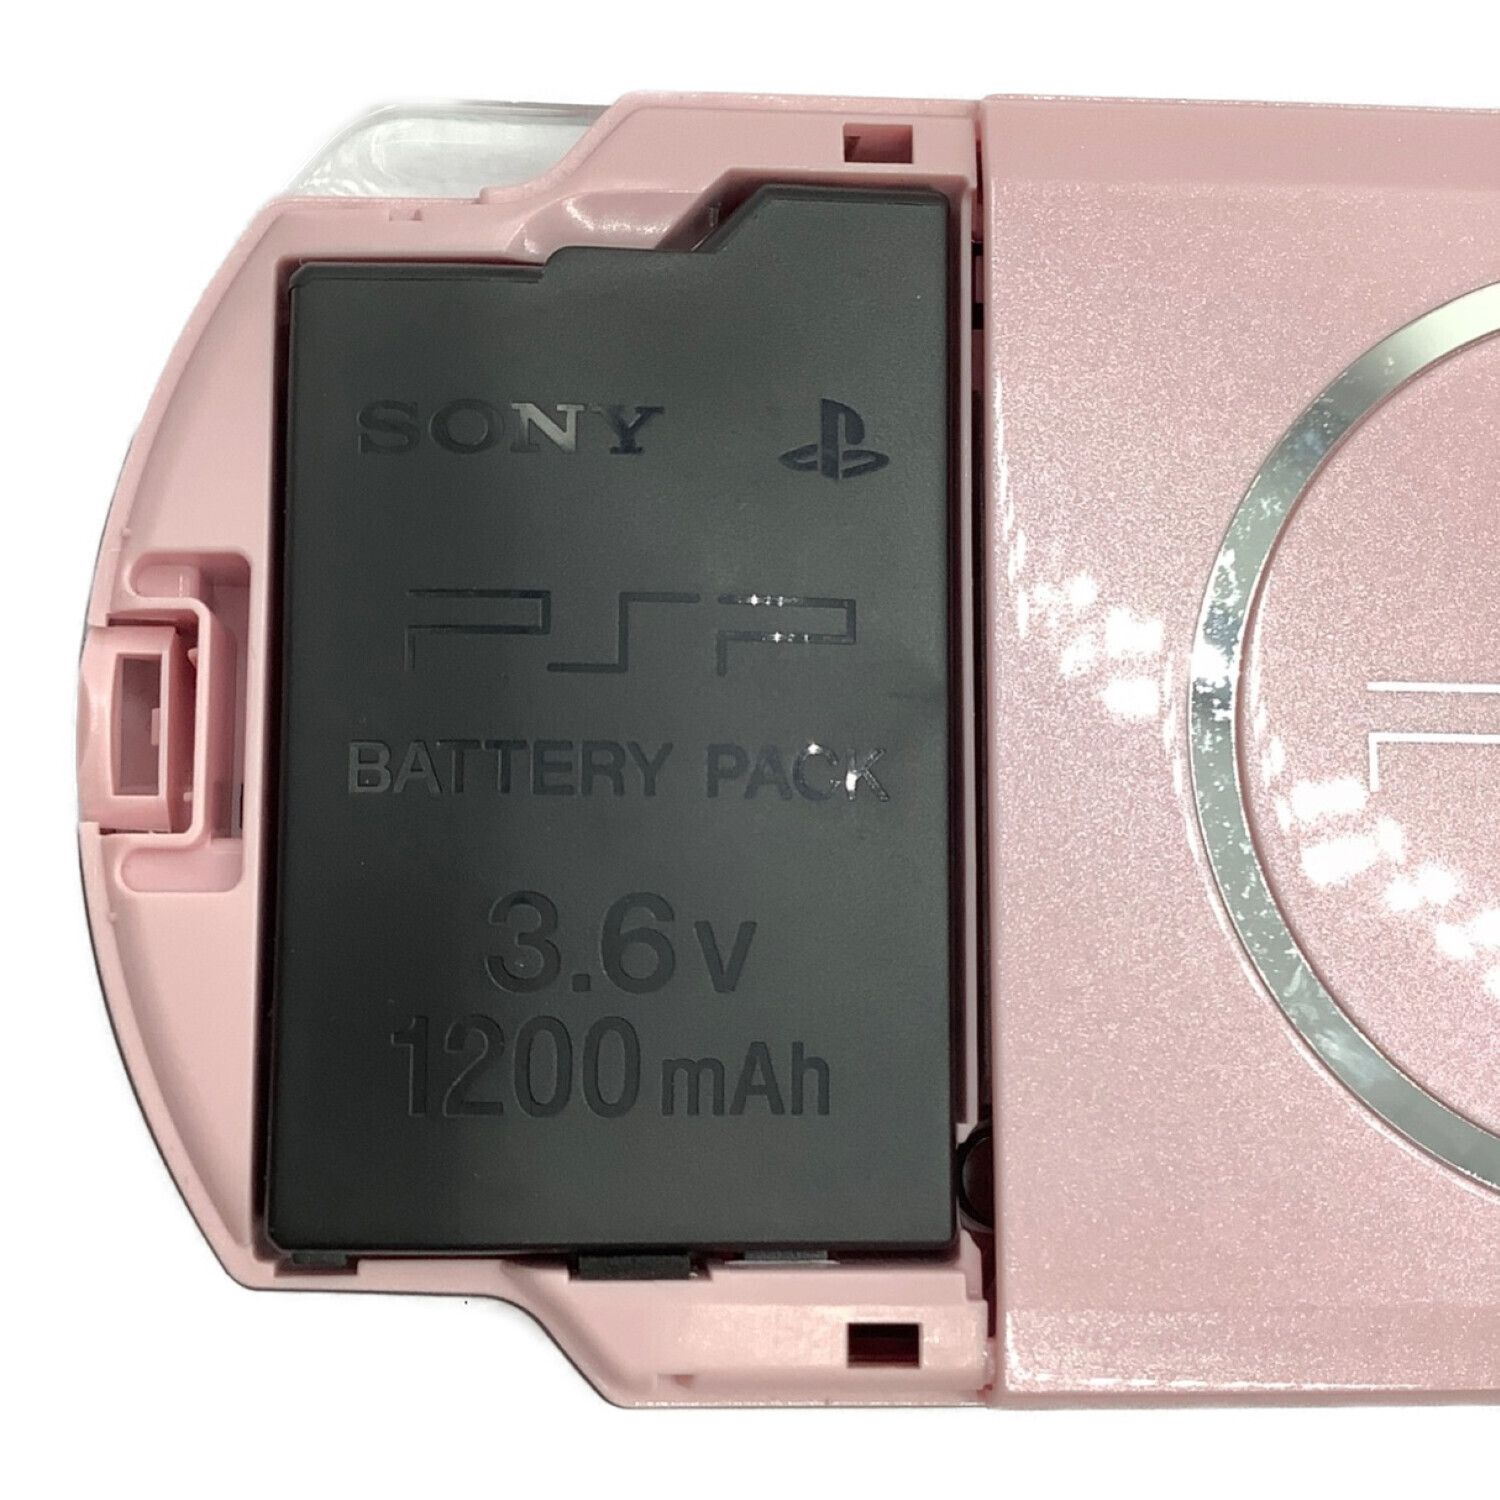 SONY (ソニー) PSP ブロッサムピンク 動作確認済 バッテリー状態不明 